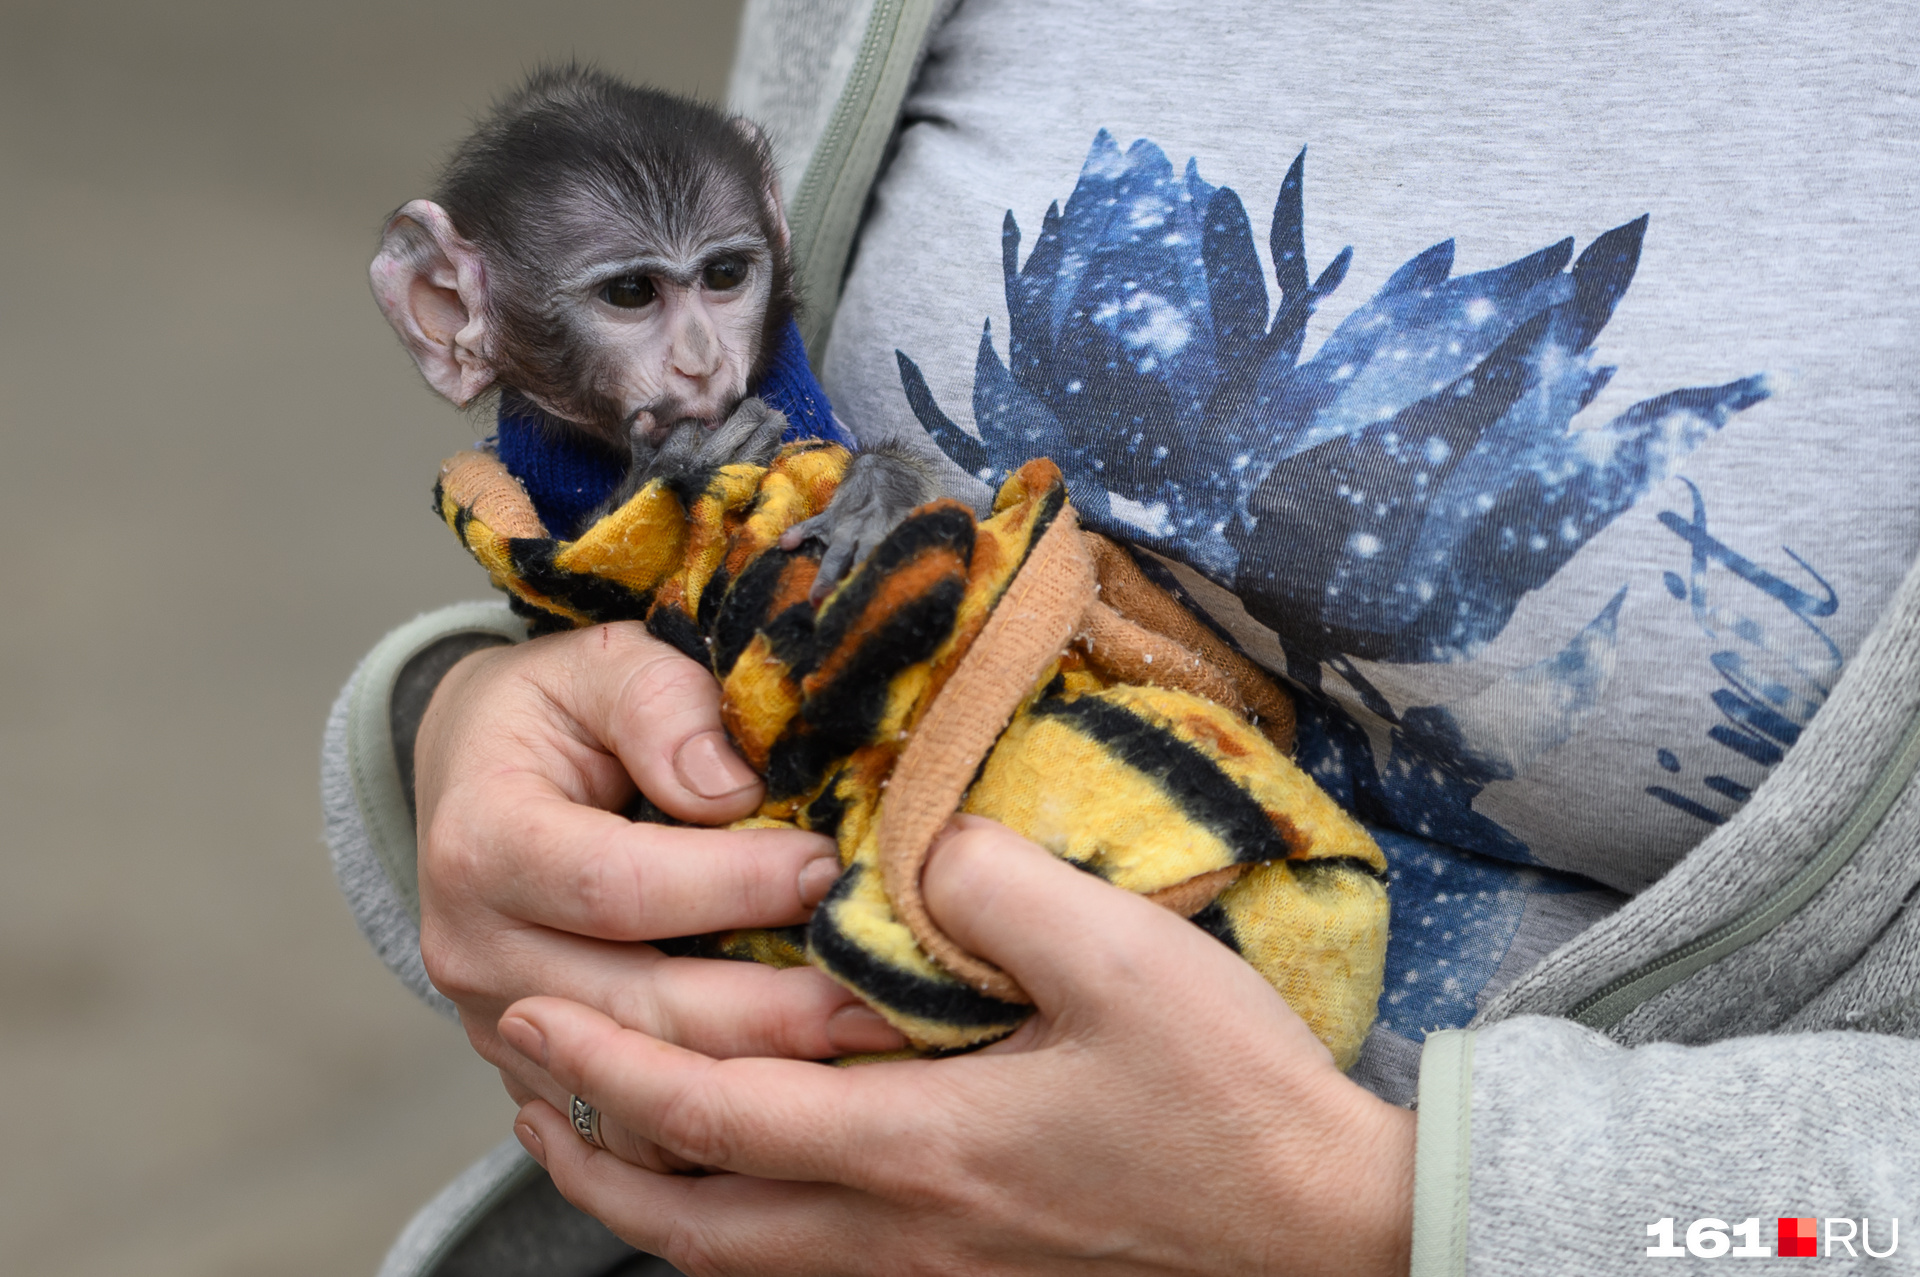 Так что маленькую Василису кормят сотрудники зоопарка — смесью для новорожденных детей